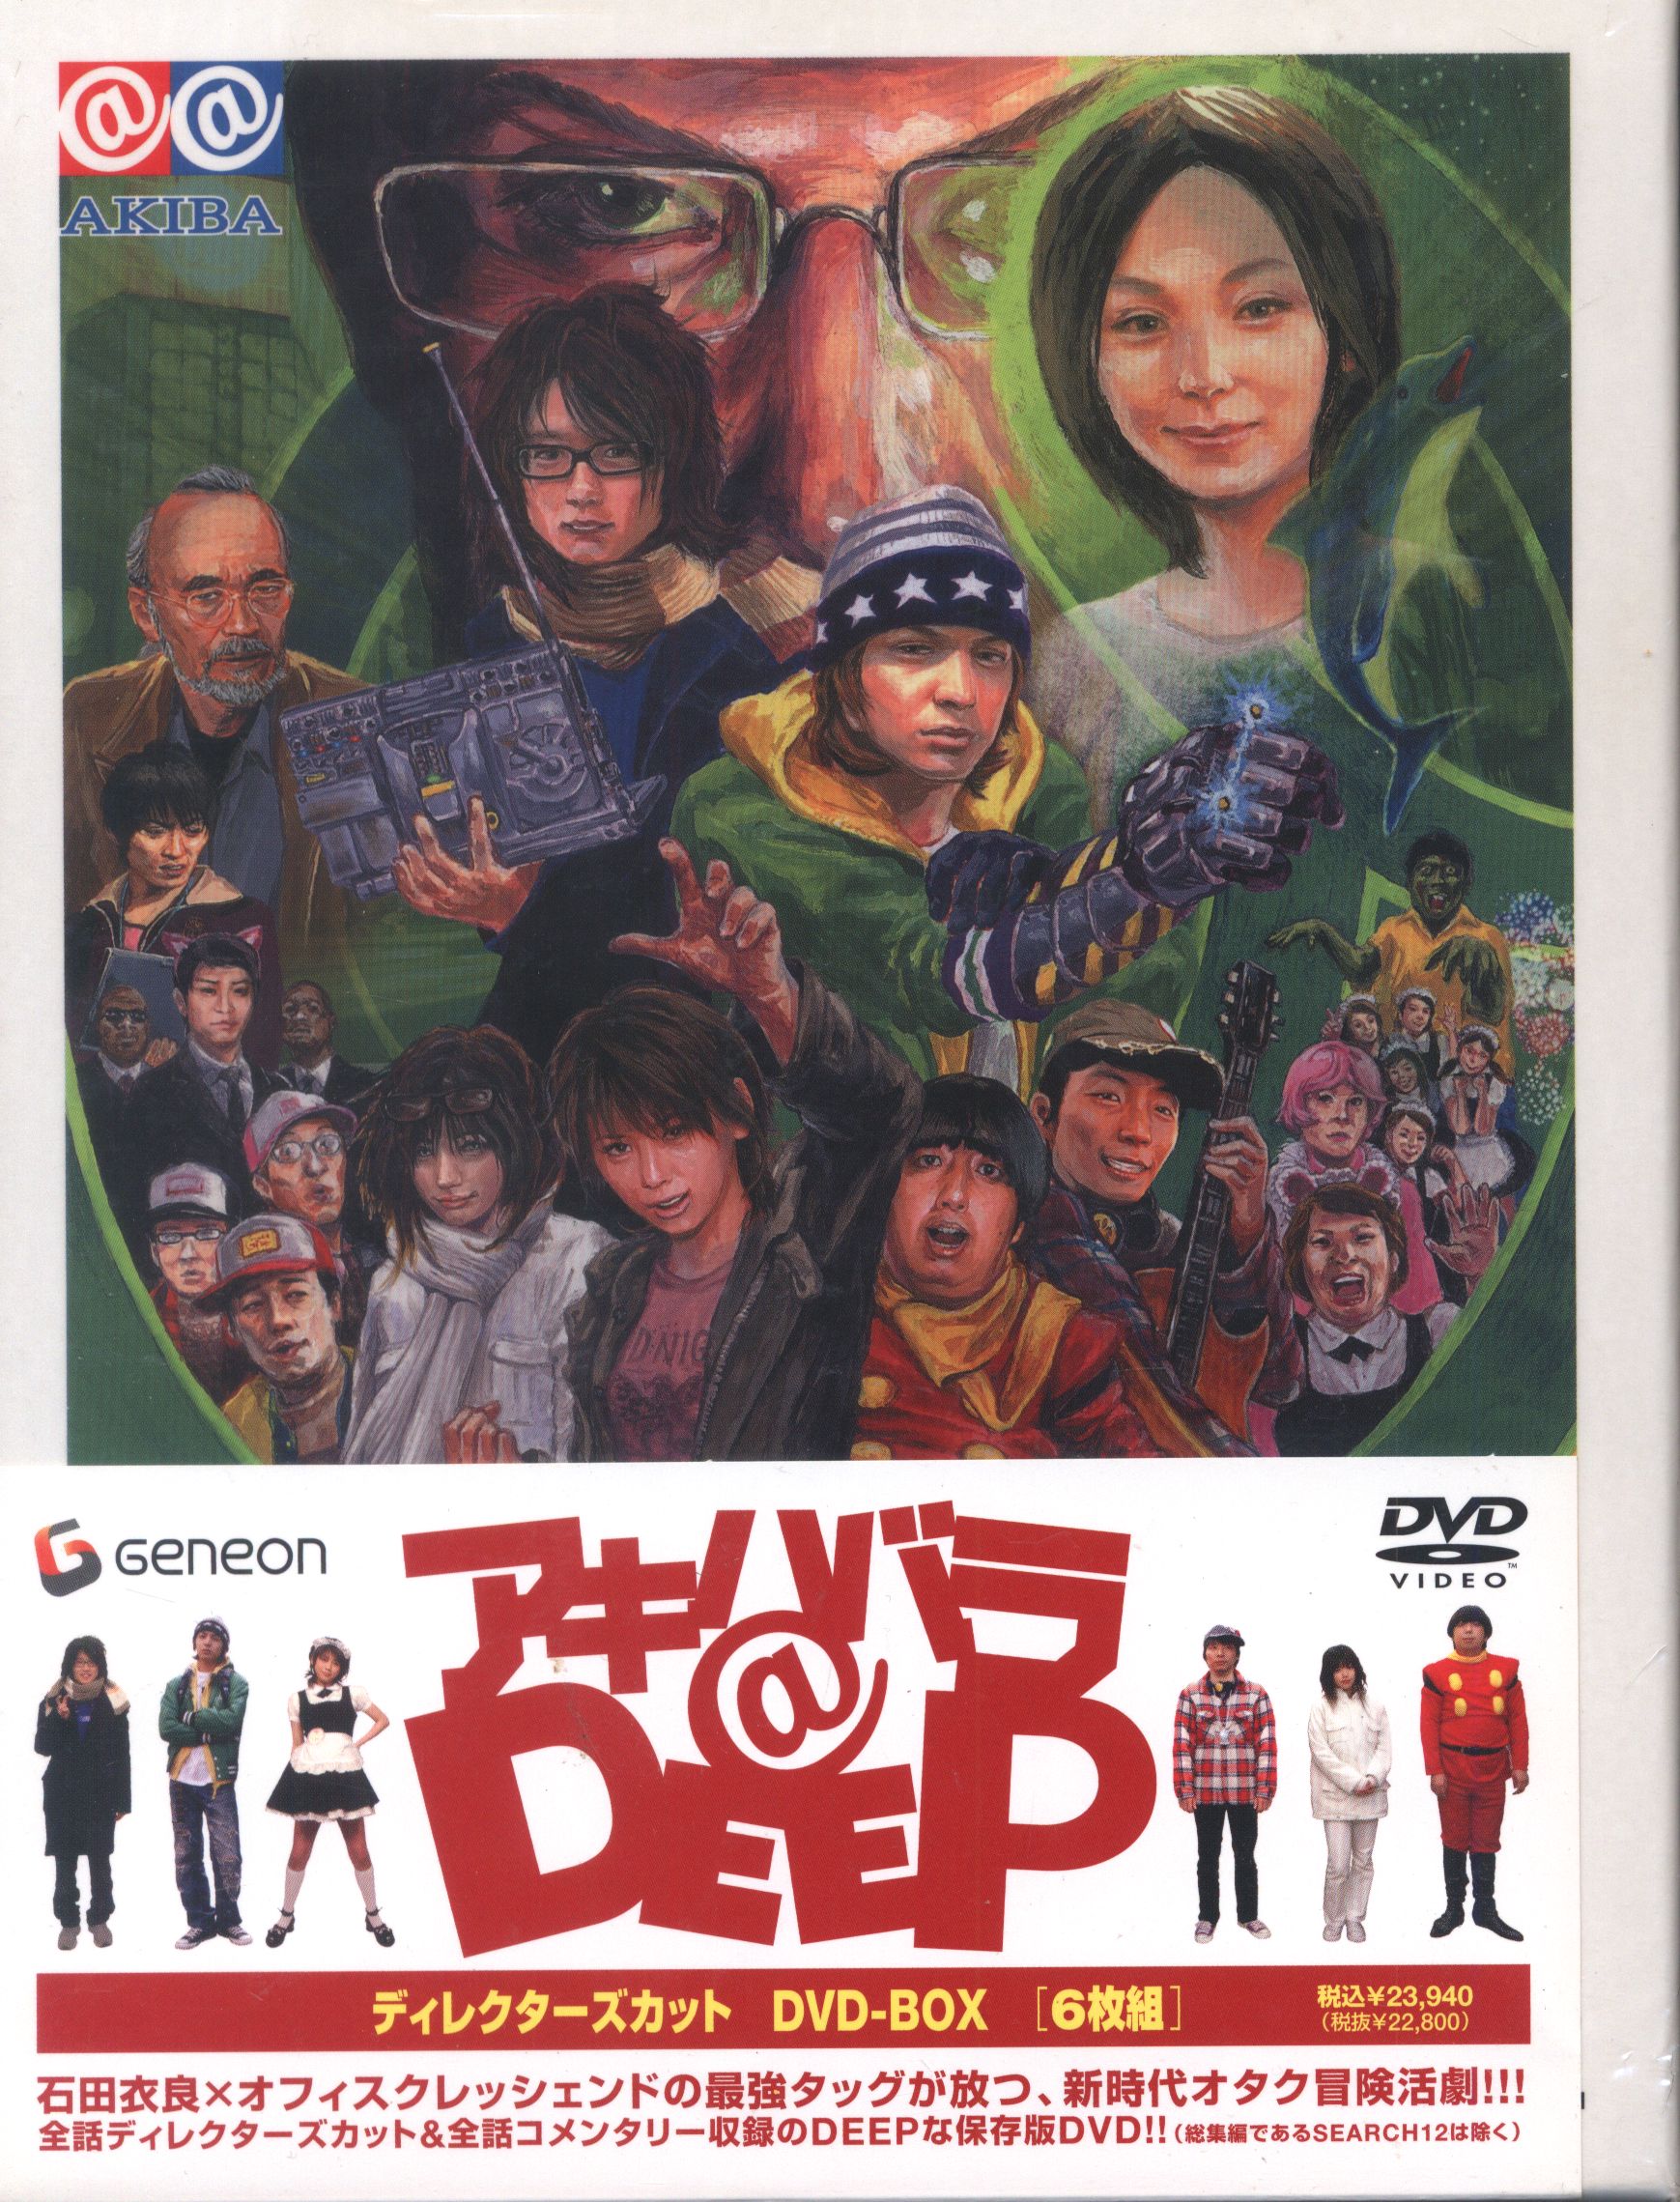 アキハバラ@DEEP ディレクターズカット DVD-BOX - 通販 - www.fif.ma